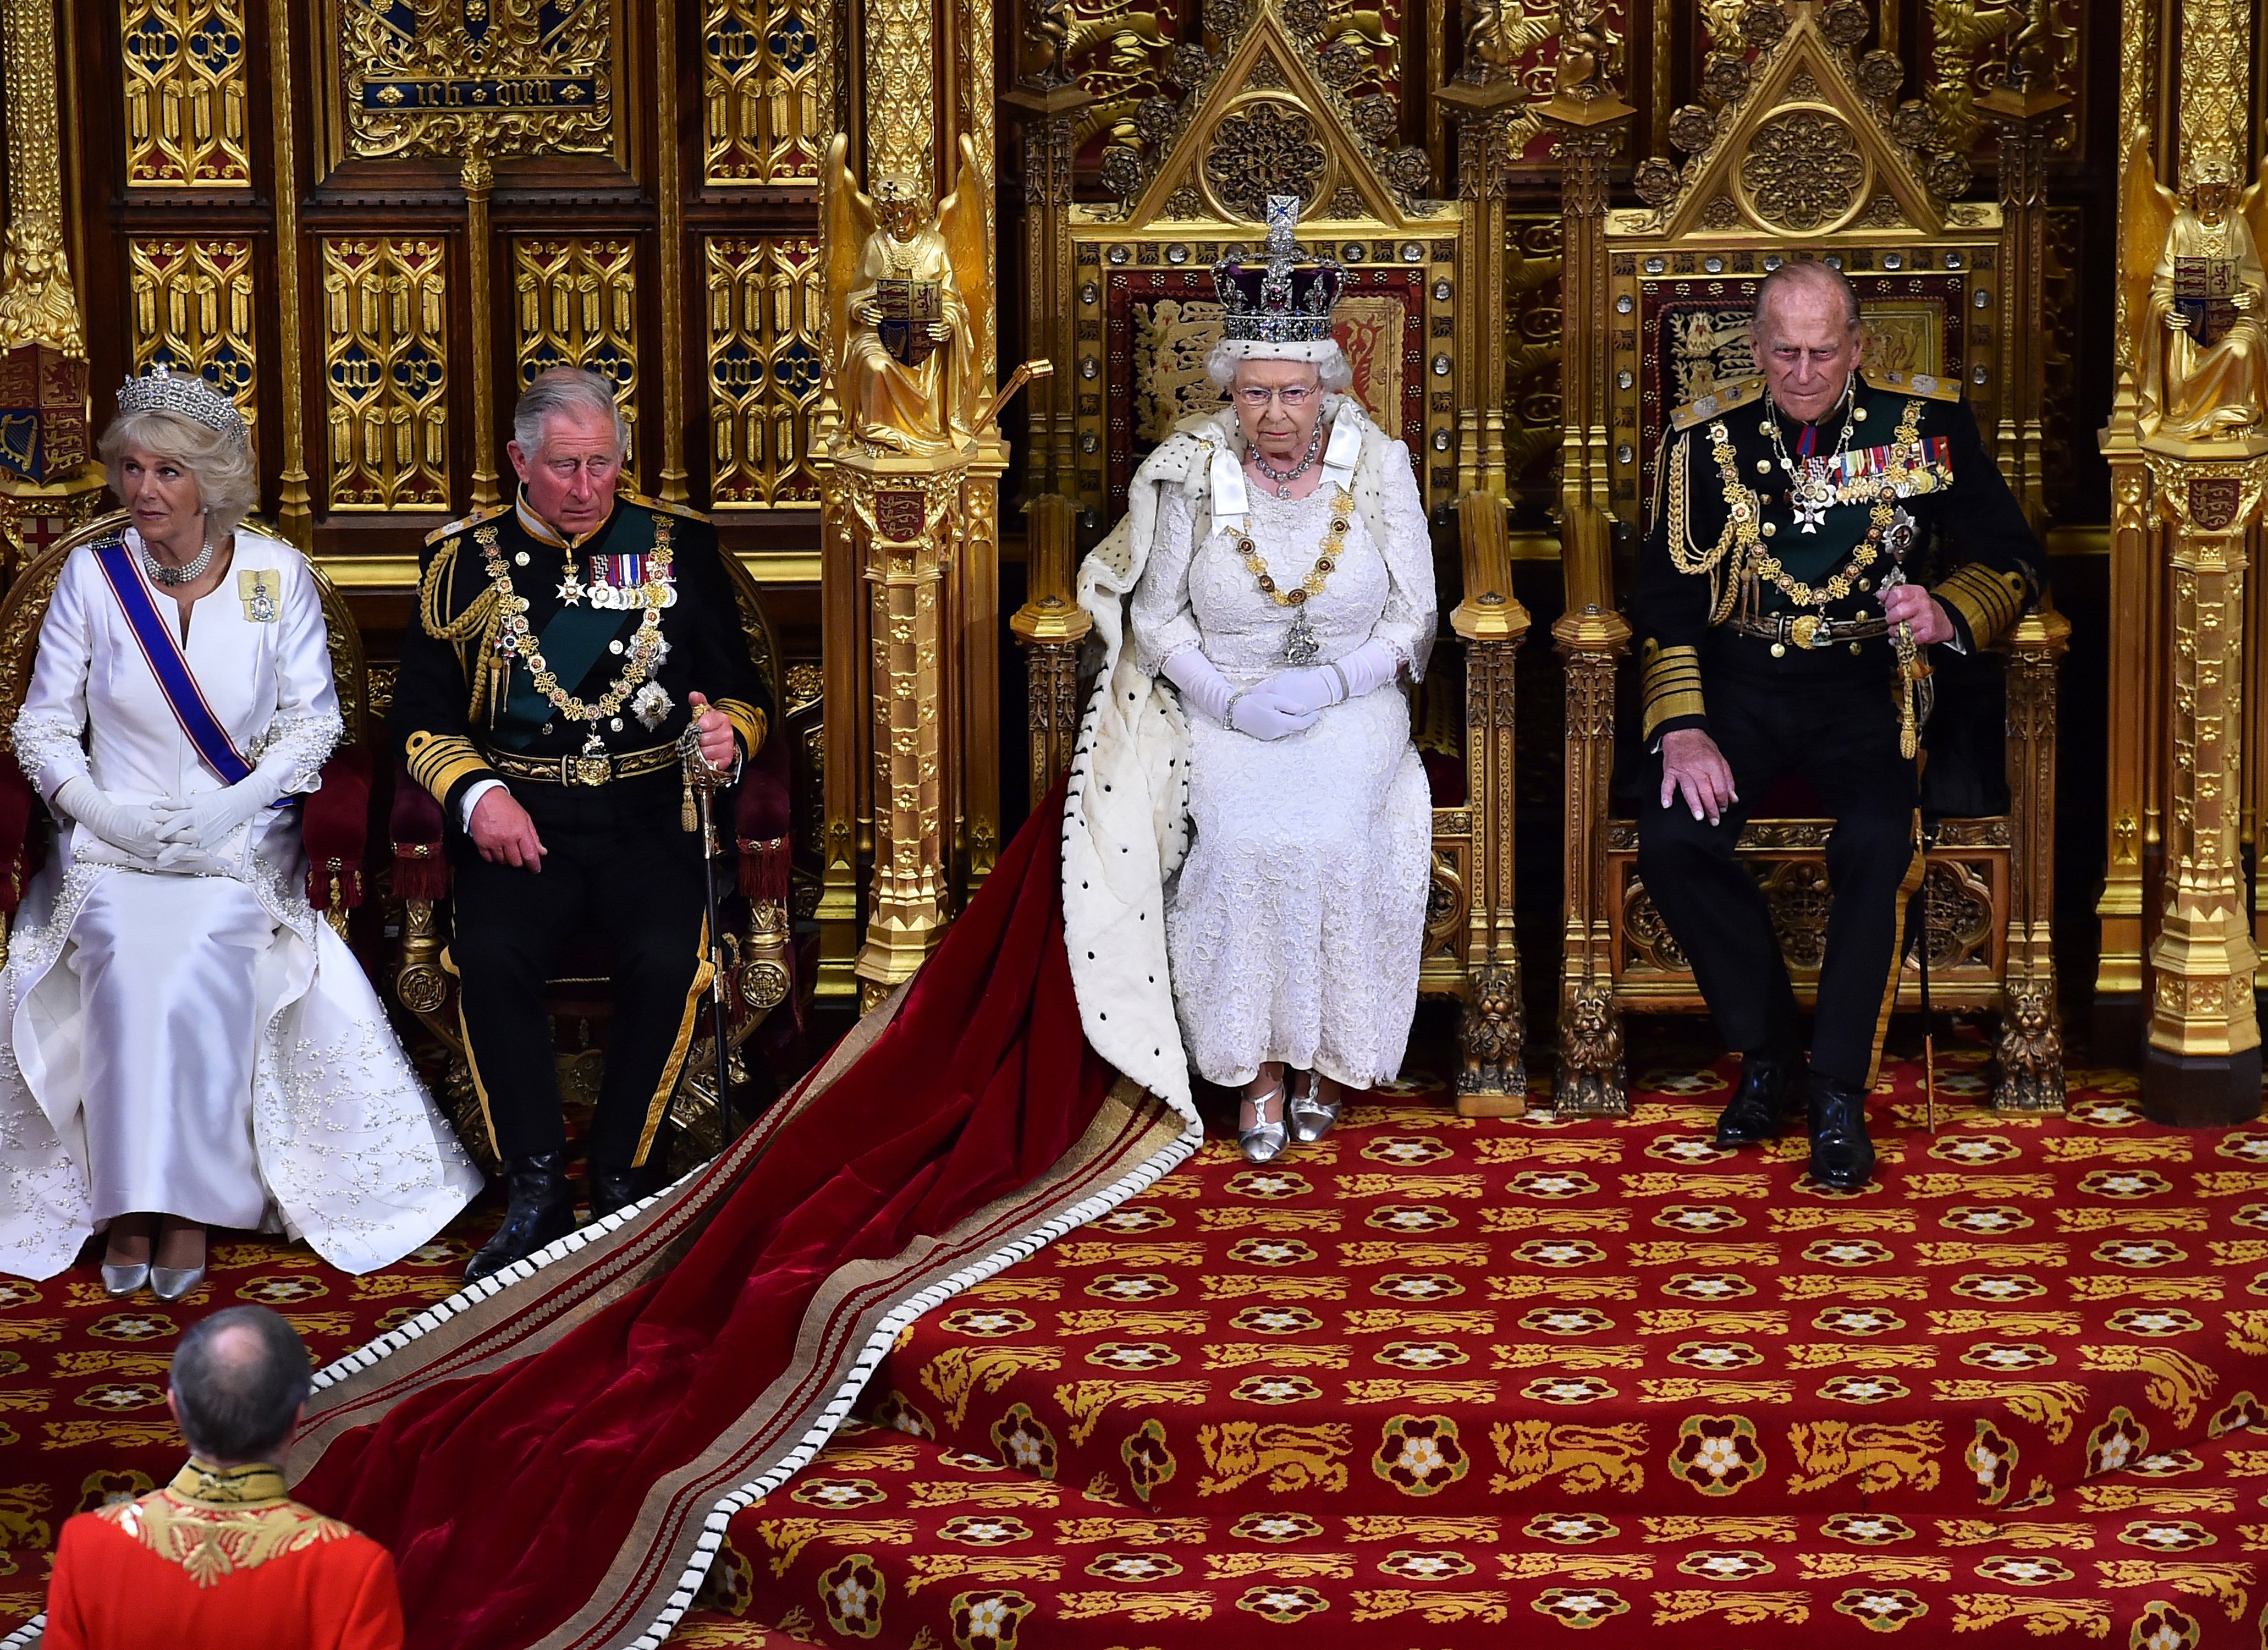 La reina Elizabeth II junto al príncipe Philip, el príncipe Charles y Camilla Parker-Bowles en la Cámara de los Lores, en el Palacio de Westminster, el 27 de mayo de 2015 en Londres, Inglaterra. | Foto: Getty Images